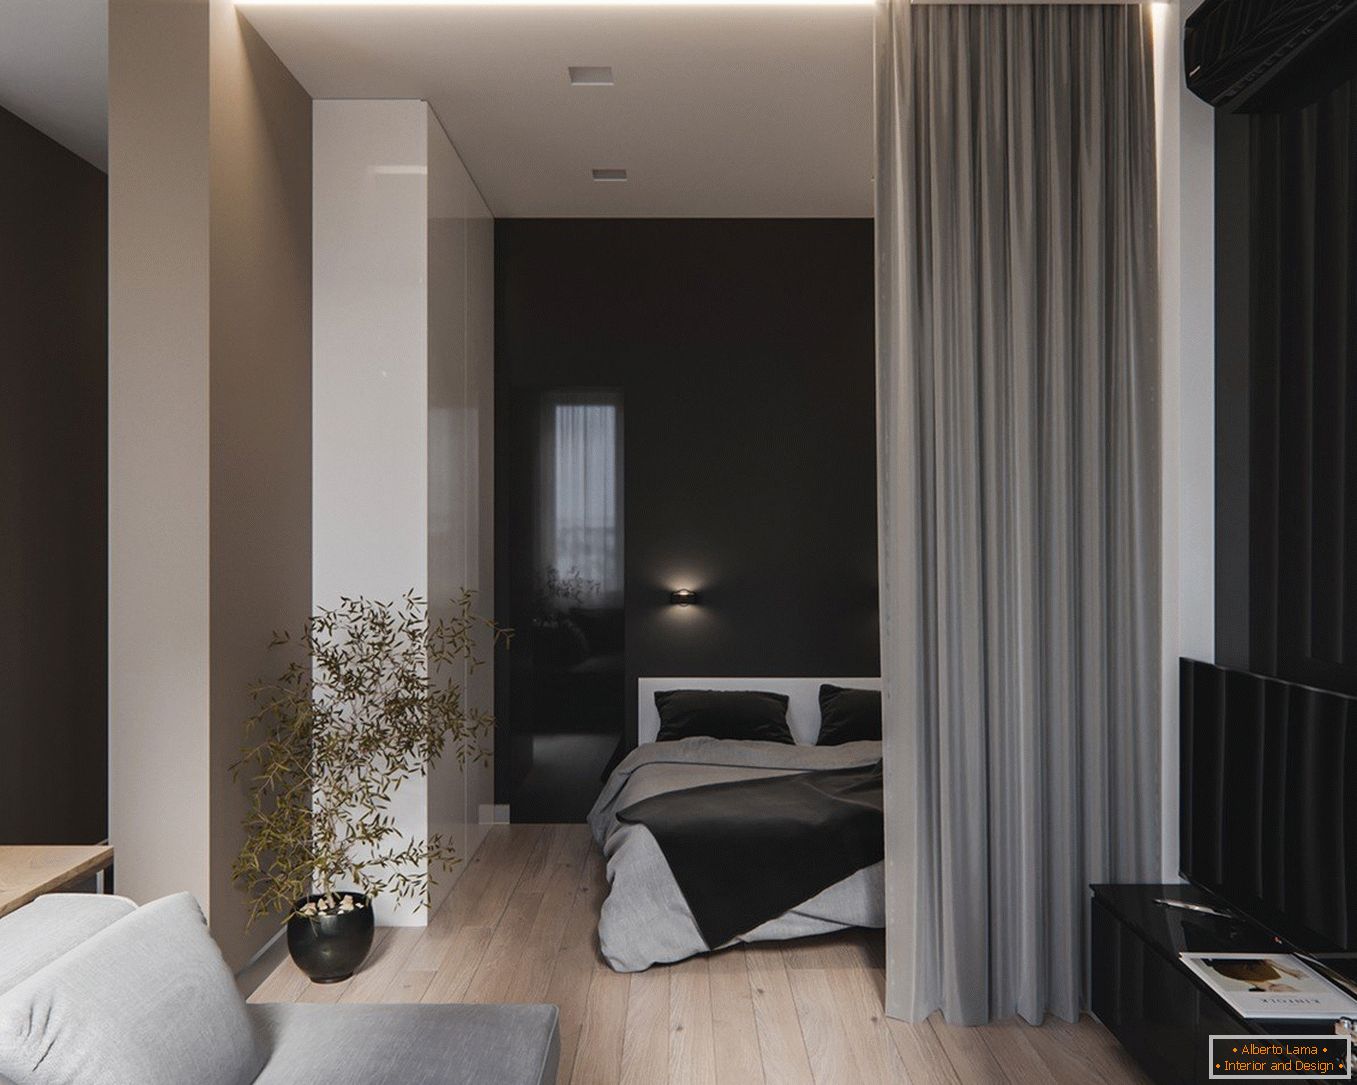 Design-Apartment-Projekt - Wohnzimmer und Bett